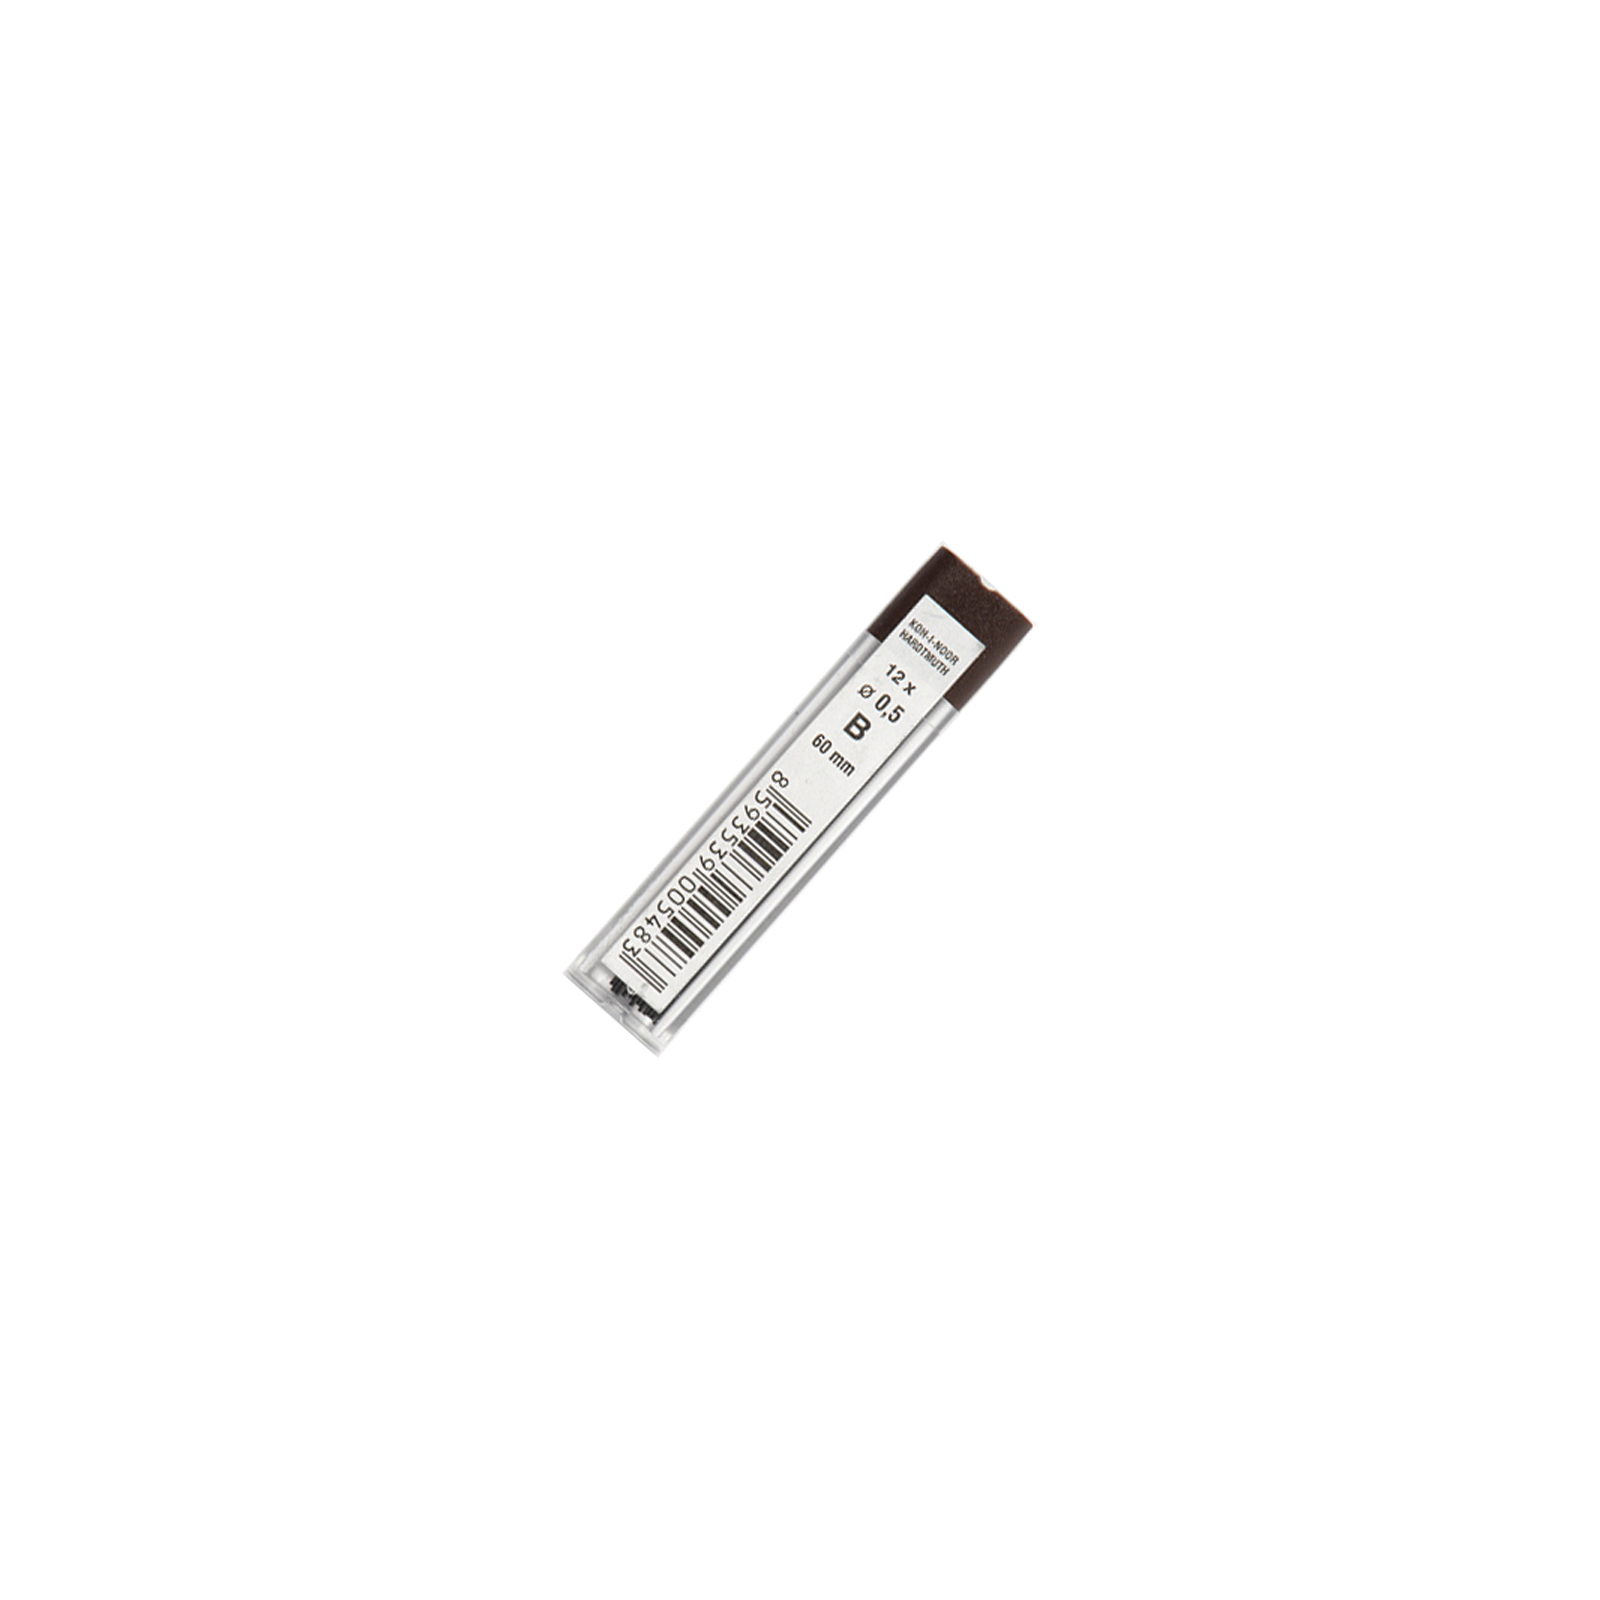 Грифель для механічного олівця Koh-i-Noor 4152.B, 0.5 мм, 12шт (415200B005PK)